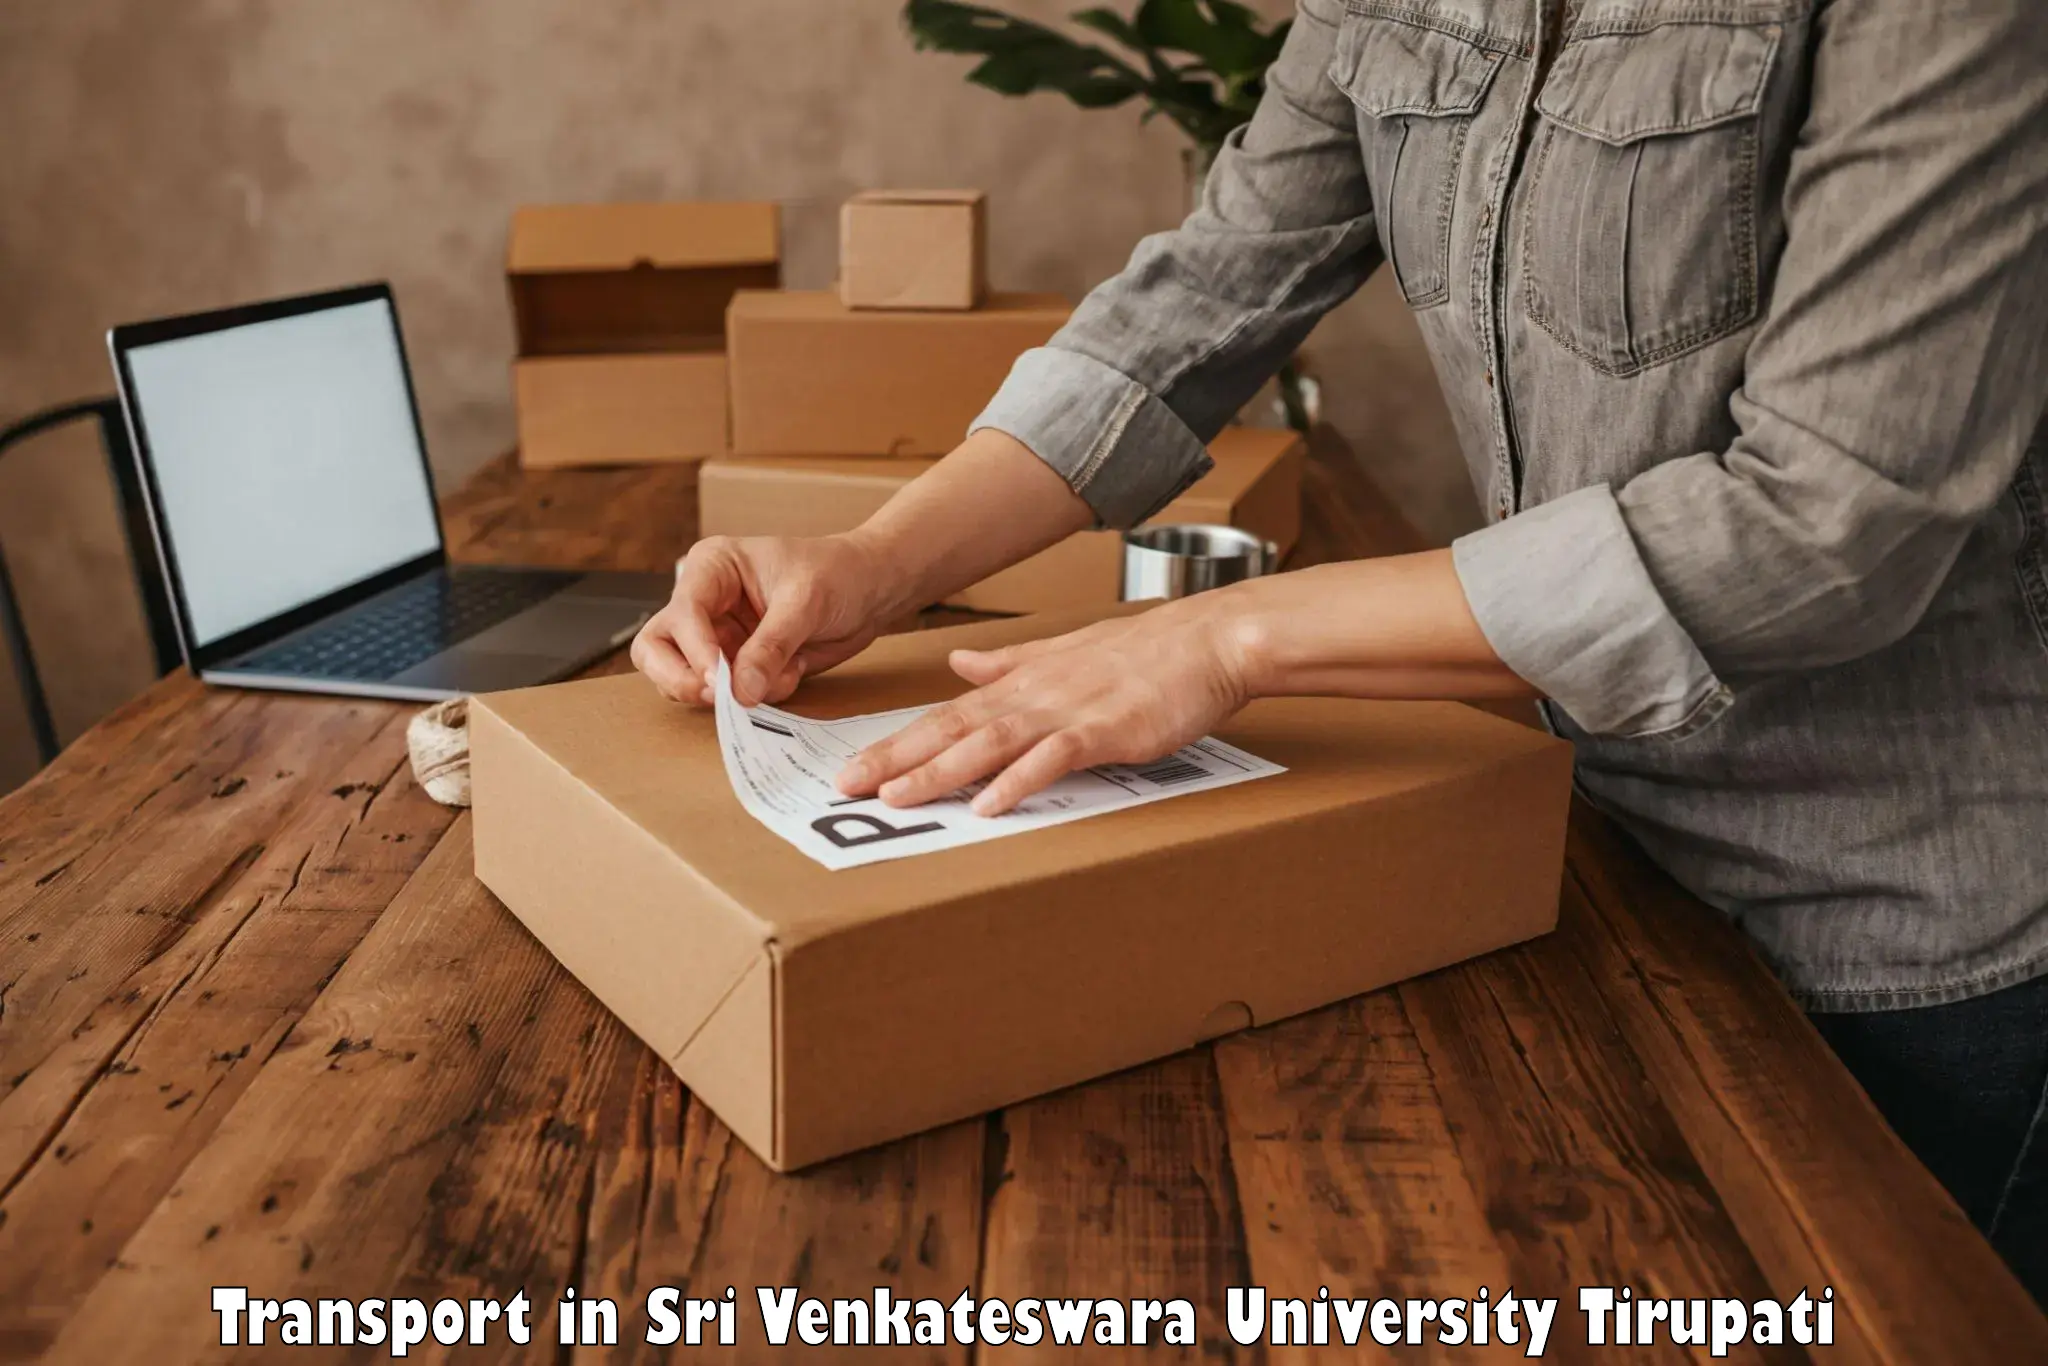 Transportation services in Sri Venkateswara University Tirupati